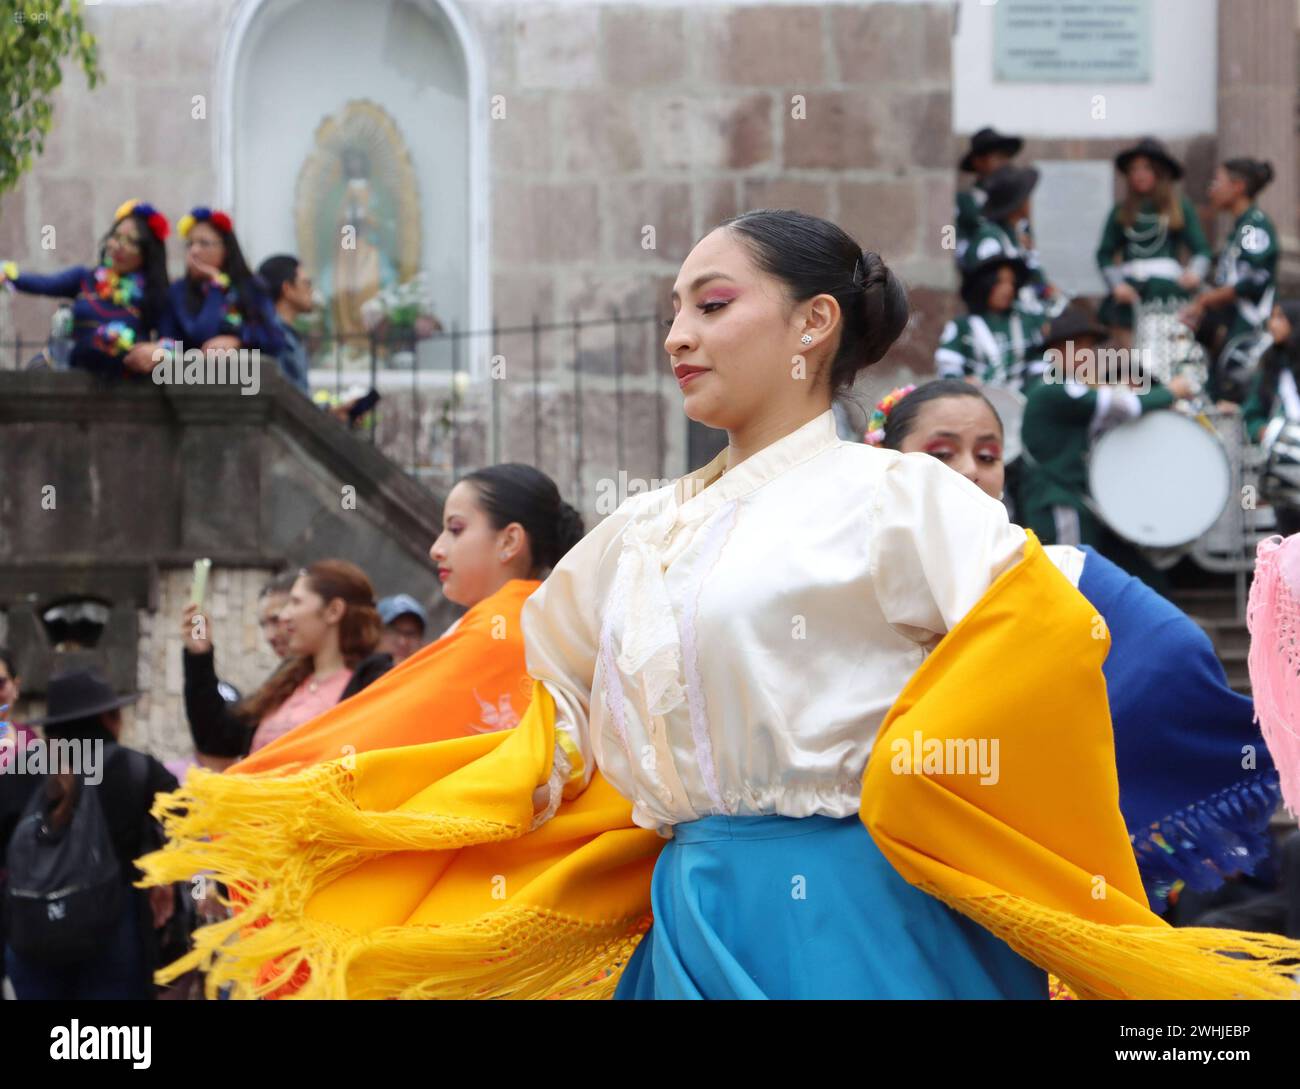 UIO-CARNAVAL-PLAZA-SAN-BLAS Quito, sabado 10 de febrero del 2024 Con Bandas de Paz, bailes tradicionales, canon de espuma, ninos, jovenes y adultos, festejan el feriado de carnaval, en la Plaza de San Blas, Centro Historico. Fotos:Rolando Enriquez/API Quito Pichincha Ecuador ACE-UIO-CARNAVAL-PLAZA-SAN-BLAS-4b4885cbff7fda1f1c46e793c3452c84 *** UIO CARNAVAL PLAZA SAN BLAS Quito, Saturday, February 10, 2024 With bands of peace, traditional dances, foam canon, children, youth and adults, celebrate the carnival holiday, in the Plaza de San Blas, Centro Historico Photos Rolando Enriquez API Quito Pi Stock Photo